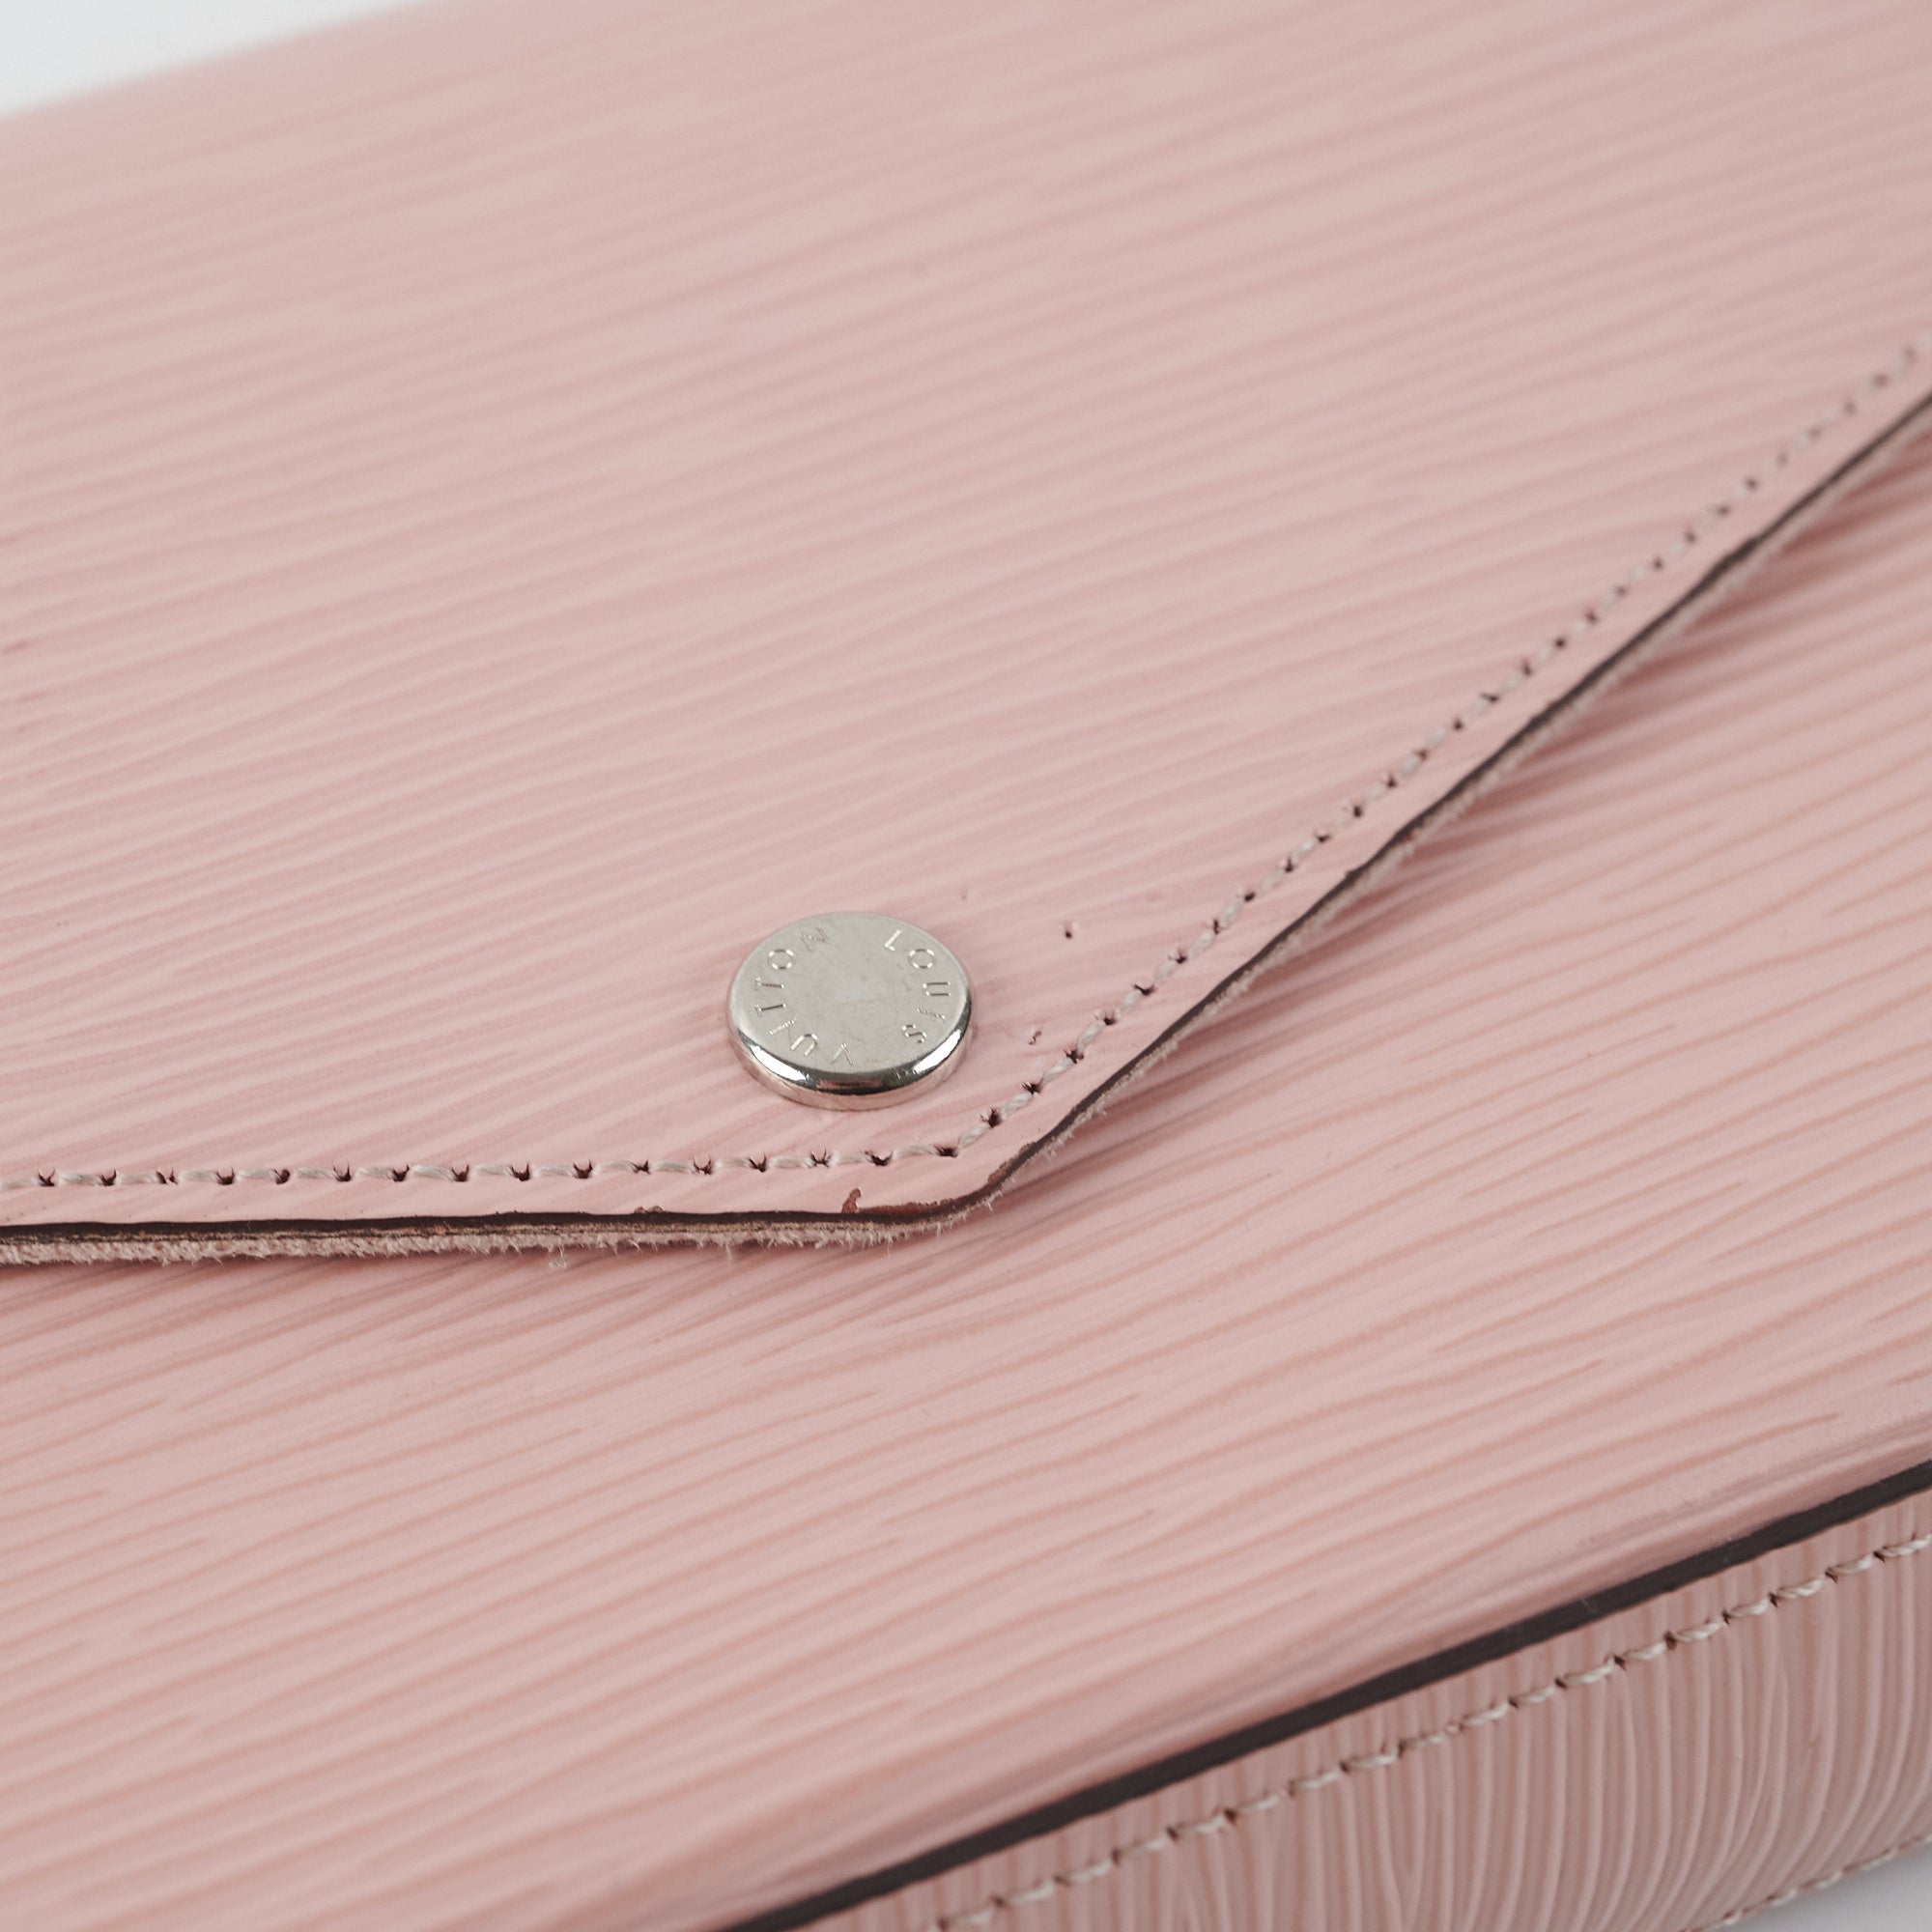 Louis Vuitton Felicie Pochette Epi Pink - THE PURSE AFFAIR